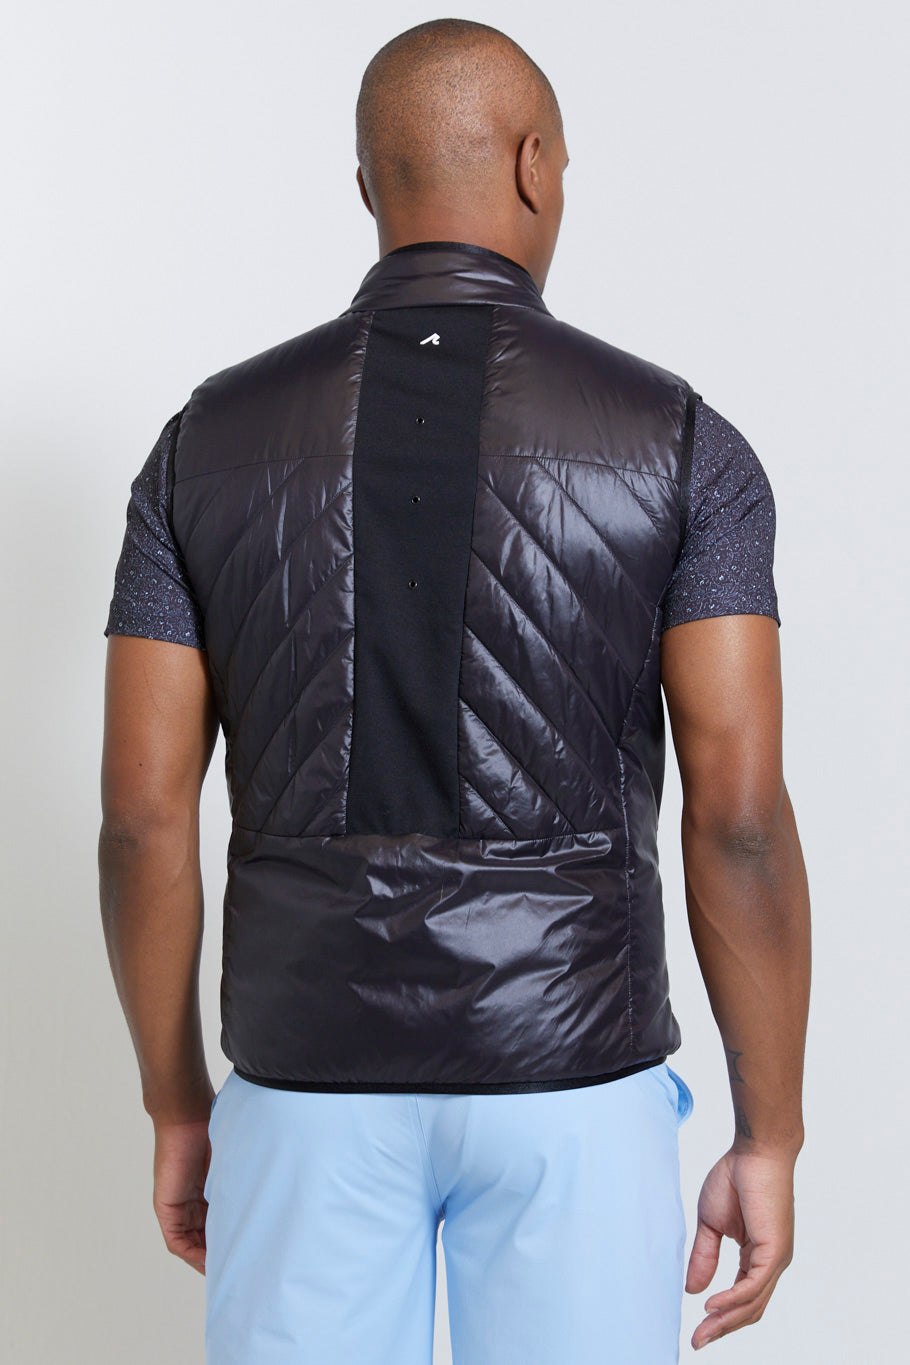 Image of the harding vest in tuxedo ss23